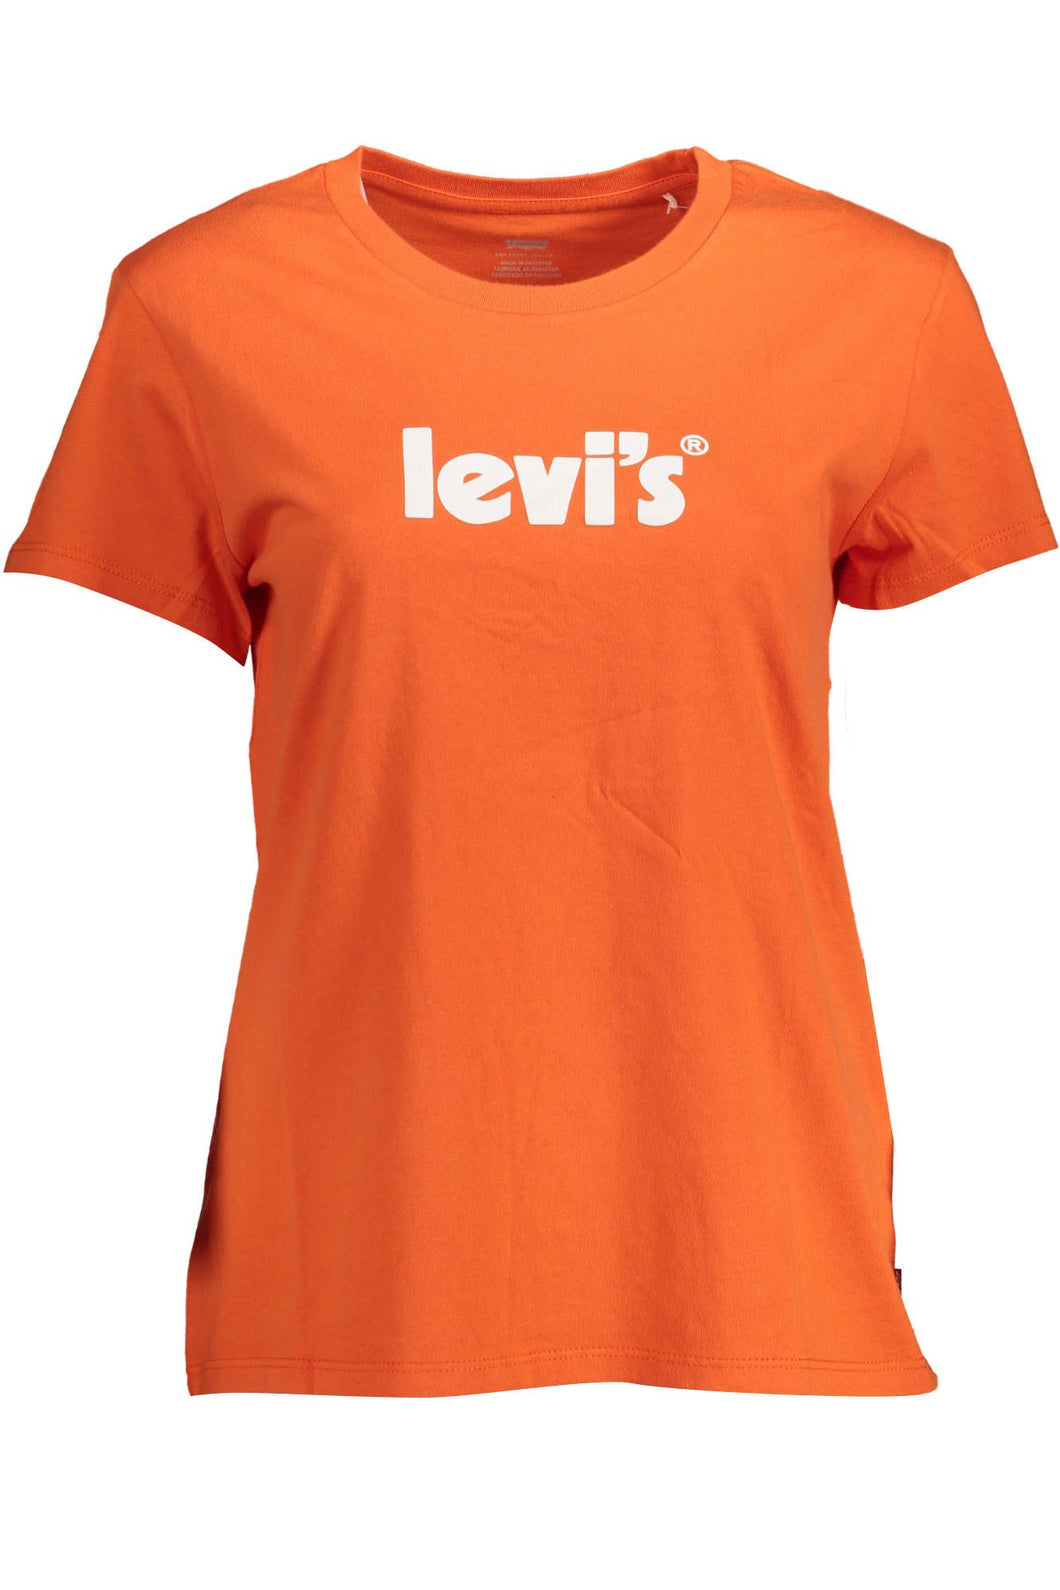 Levi's Orange Cotton Tops & T-Shirt